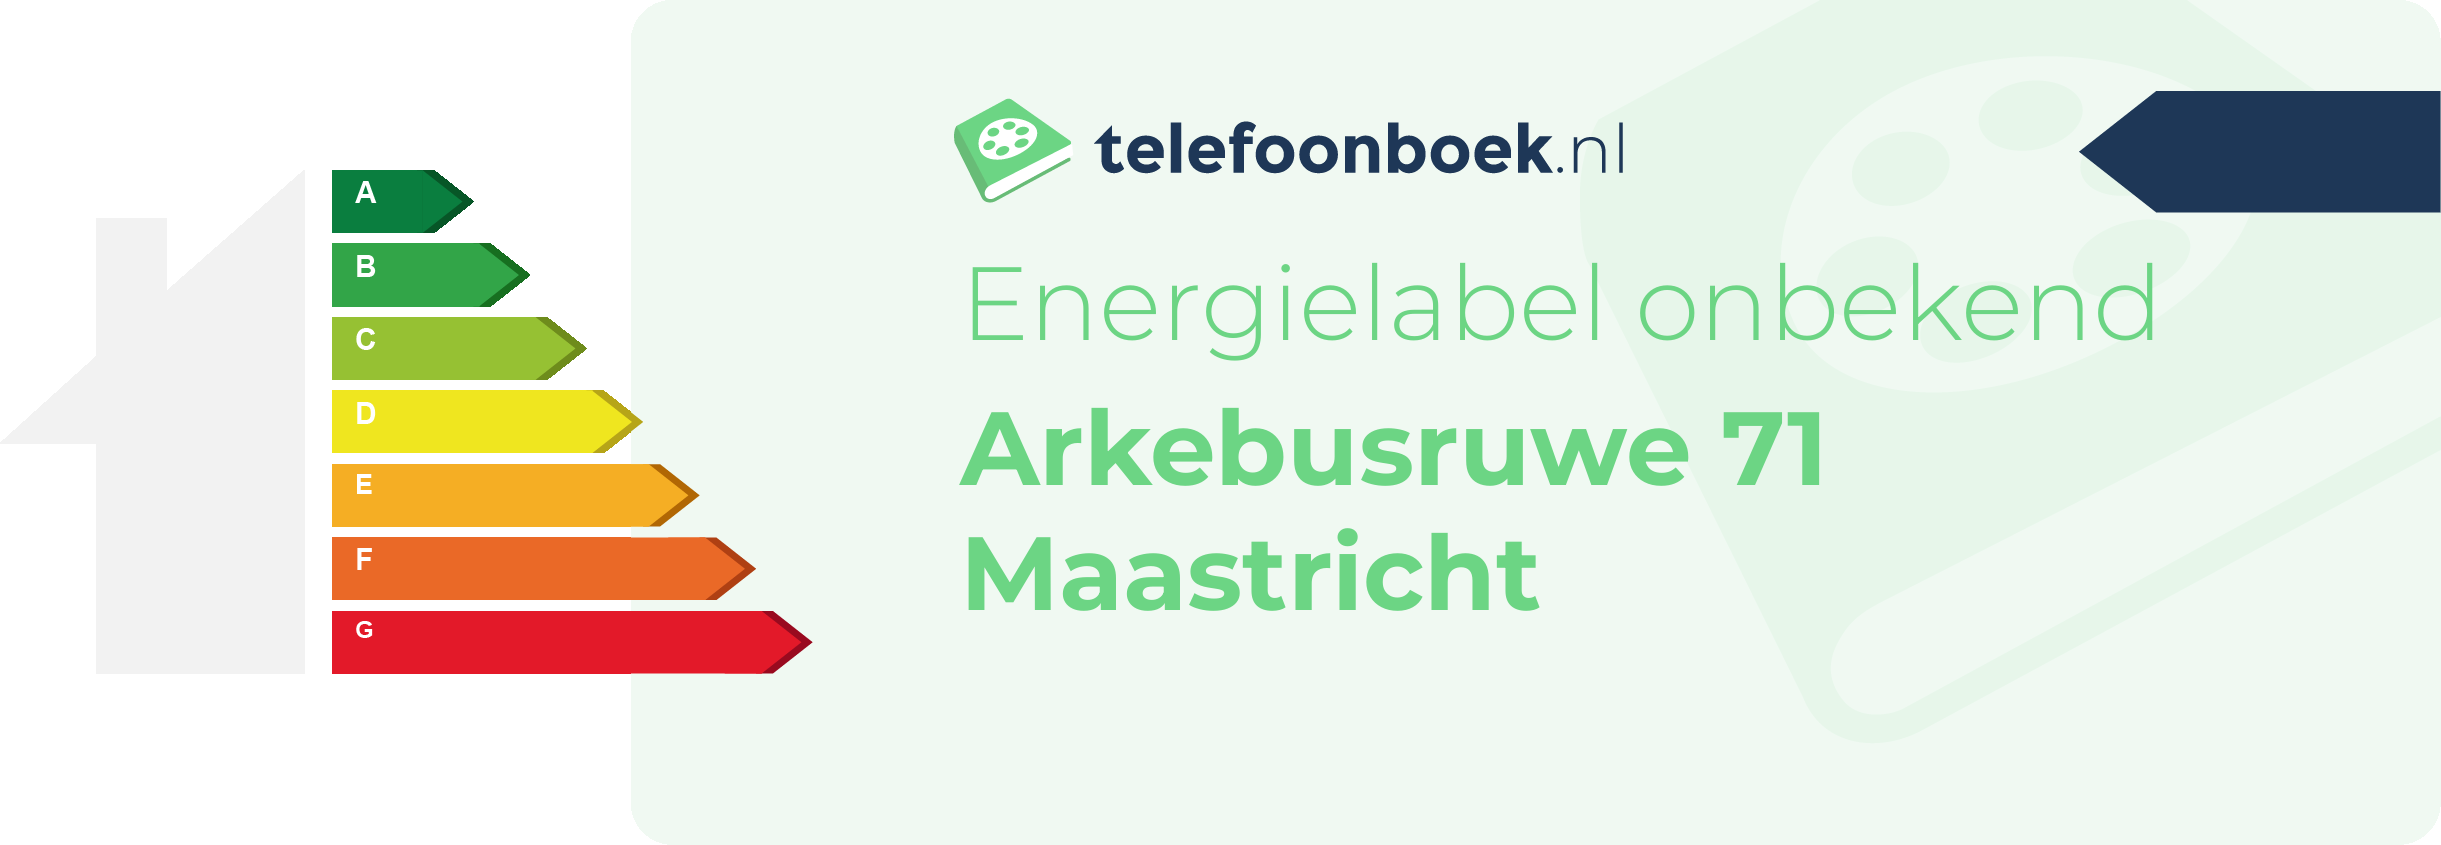 Energielabel Arkebusruwe 71 Maastricht